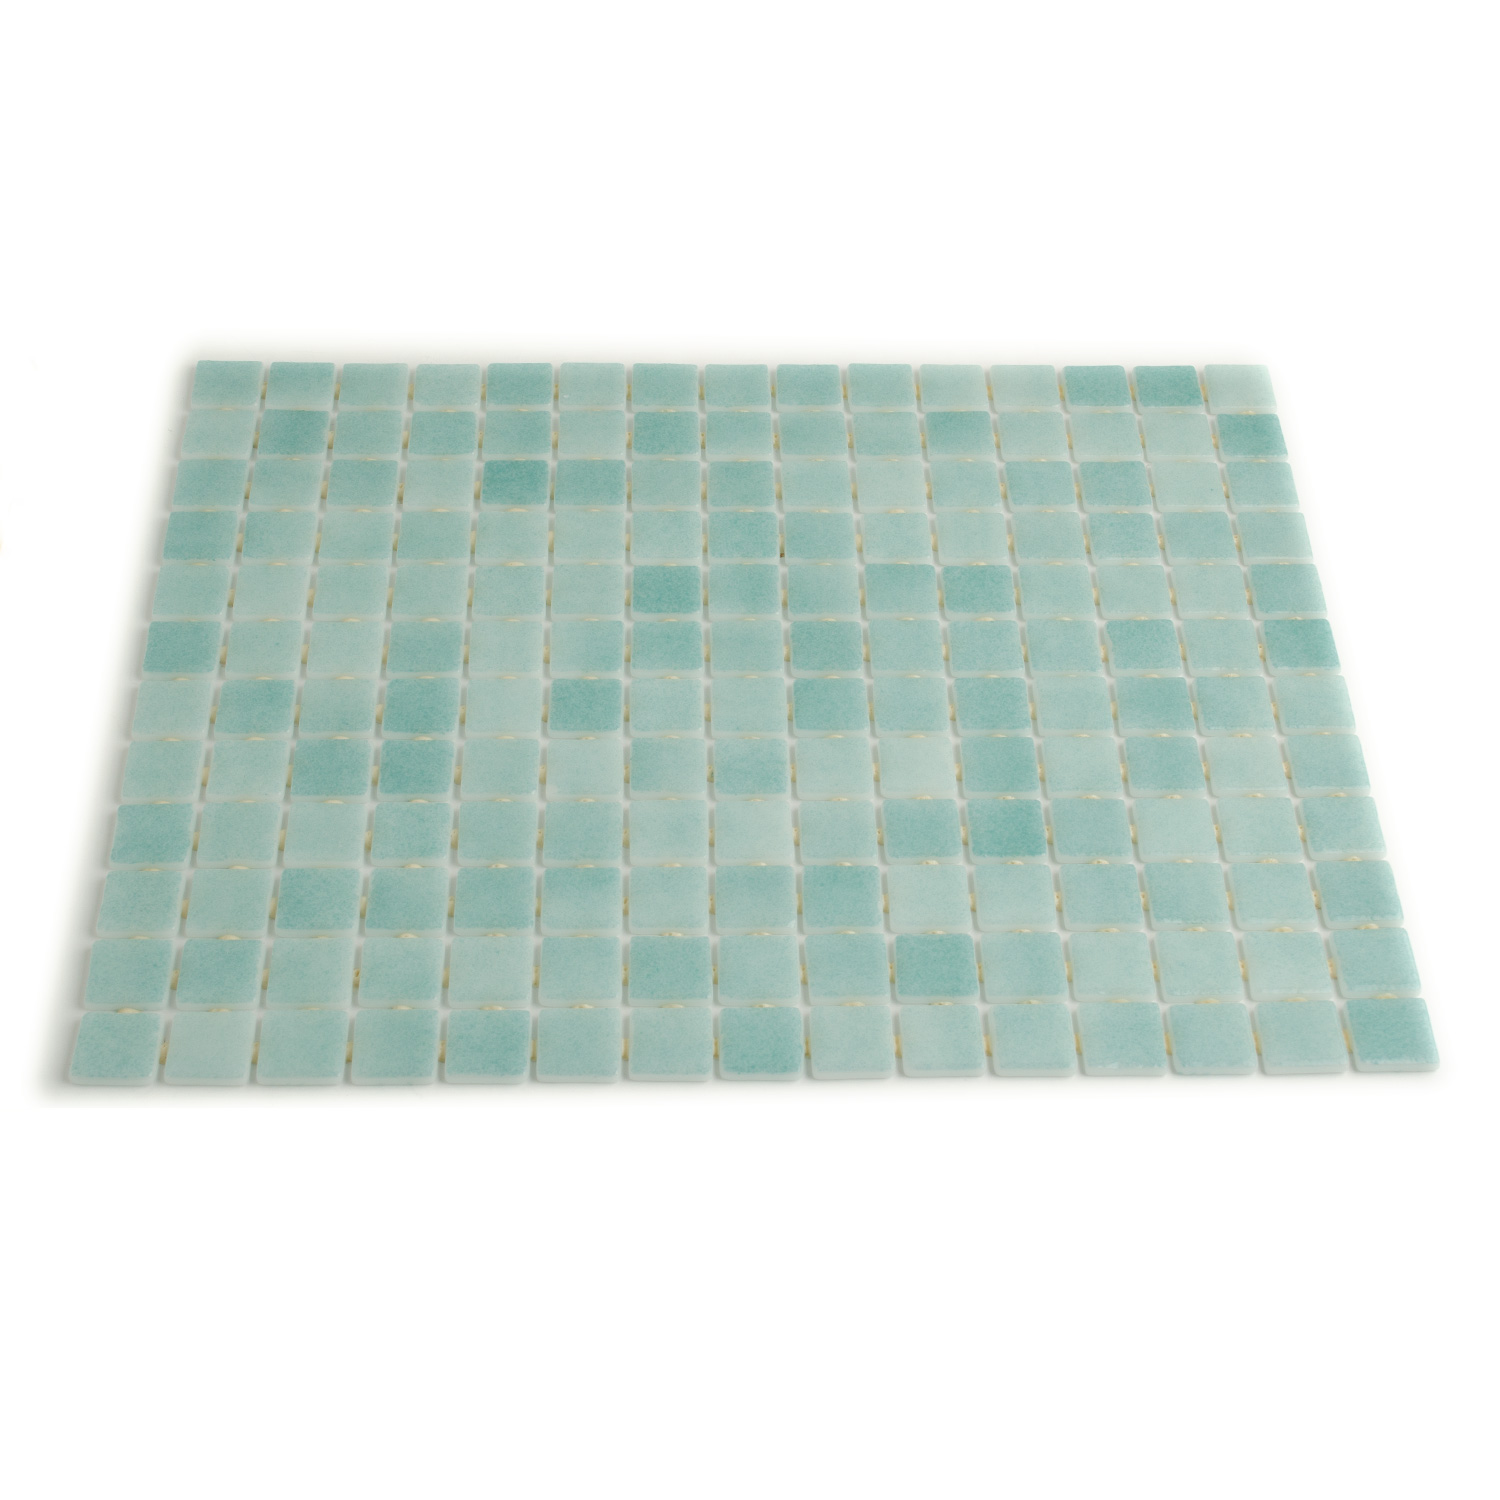 Schwimmbad Mosaik Glasmosaik Blaugrün Bianca